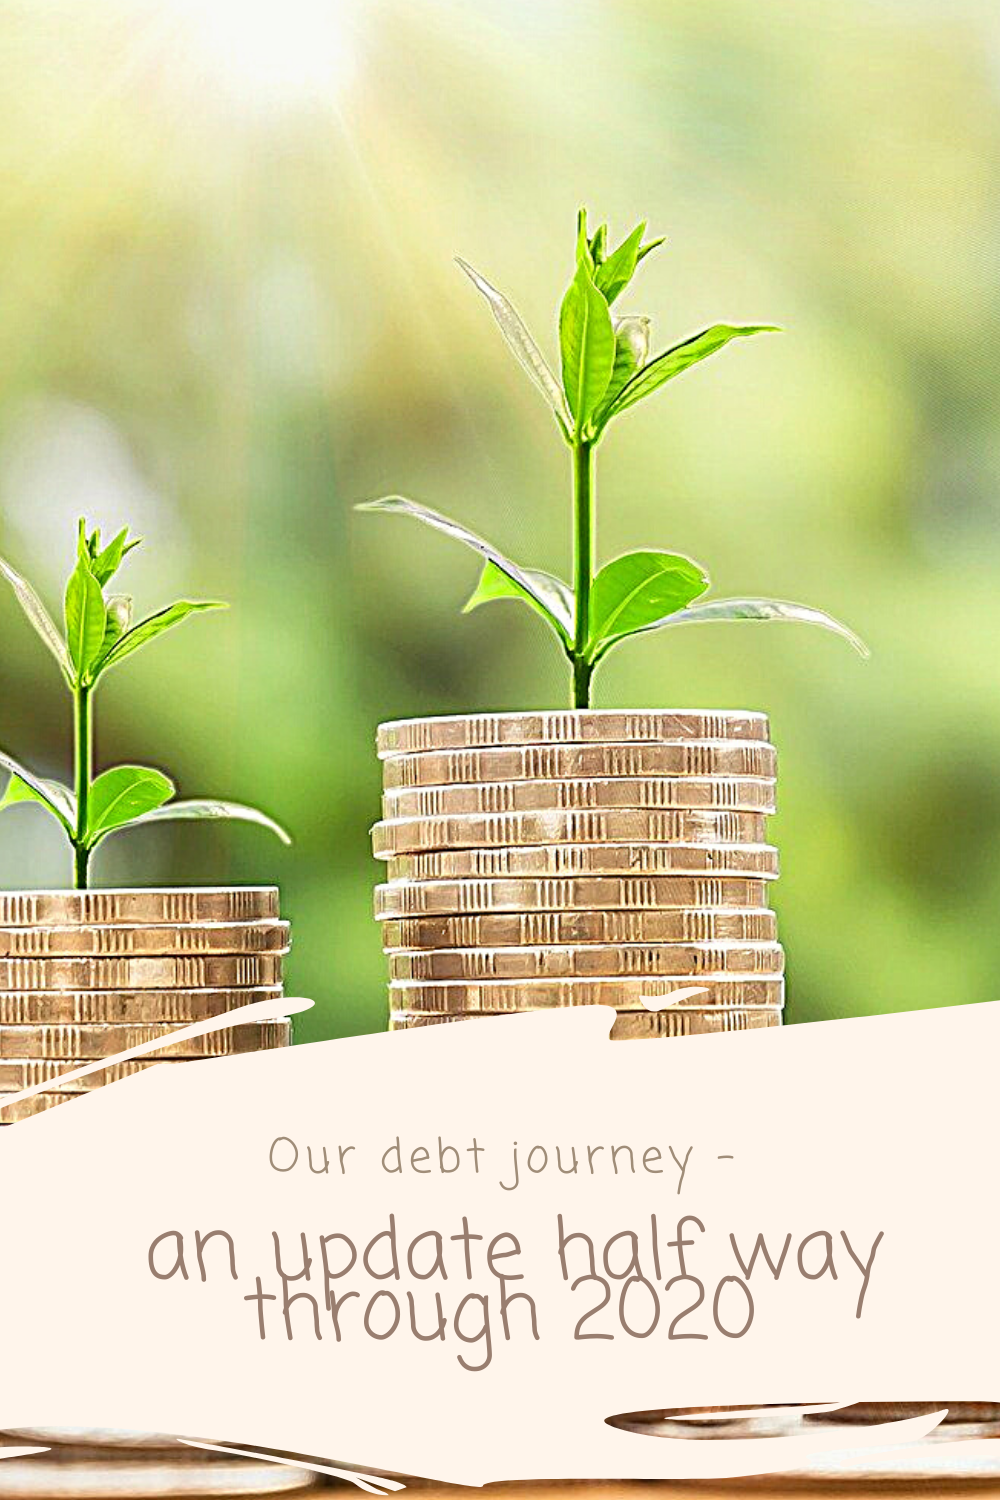 Our debt journey - an update half way through 2020